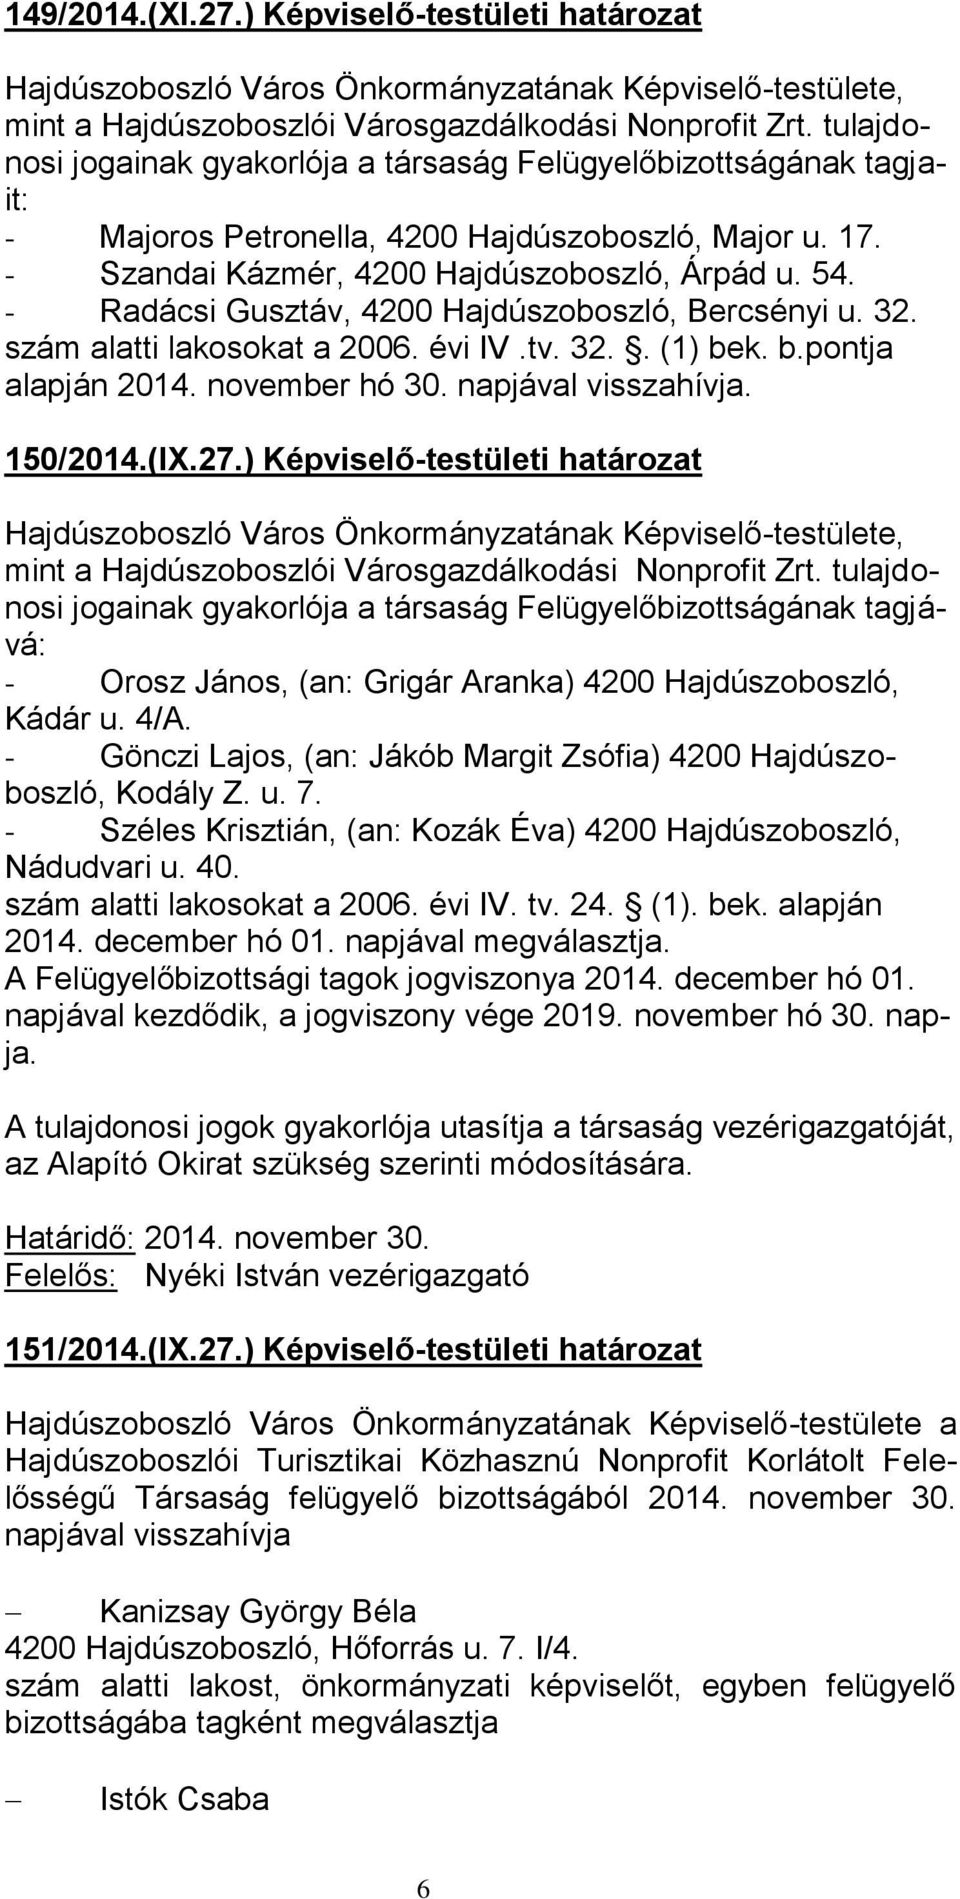 - Radácsi Gusztáv, 4200 Hajdúszoboszló, Bercsényi u. 32. szám alatti lakosokat a 2006. évi IV.tv. 32.. (1) bek. b.pontja alapján 2014. november hó 30. napjával visszahívja. 150/2014.(IX.27.